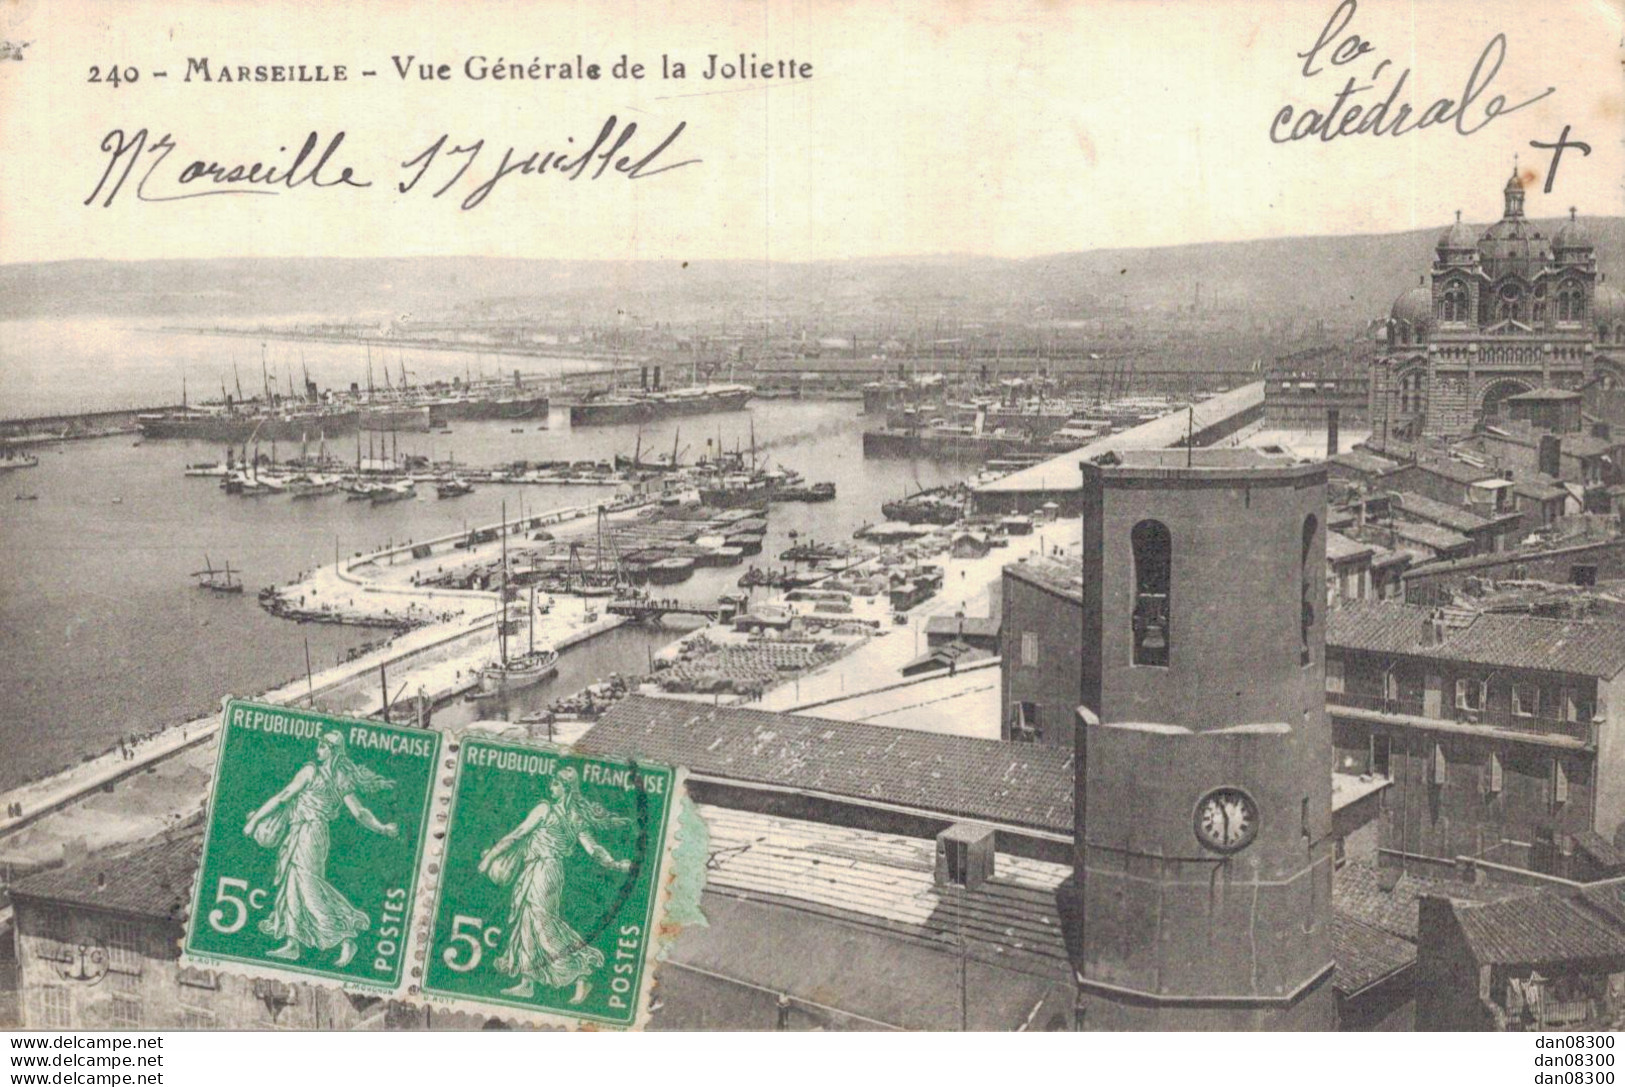 13 MARSEILLE VUE GENERALE DE LA JOLIETTE - Joliette, Zone Portuaire